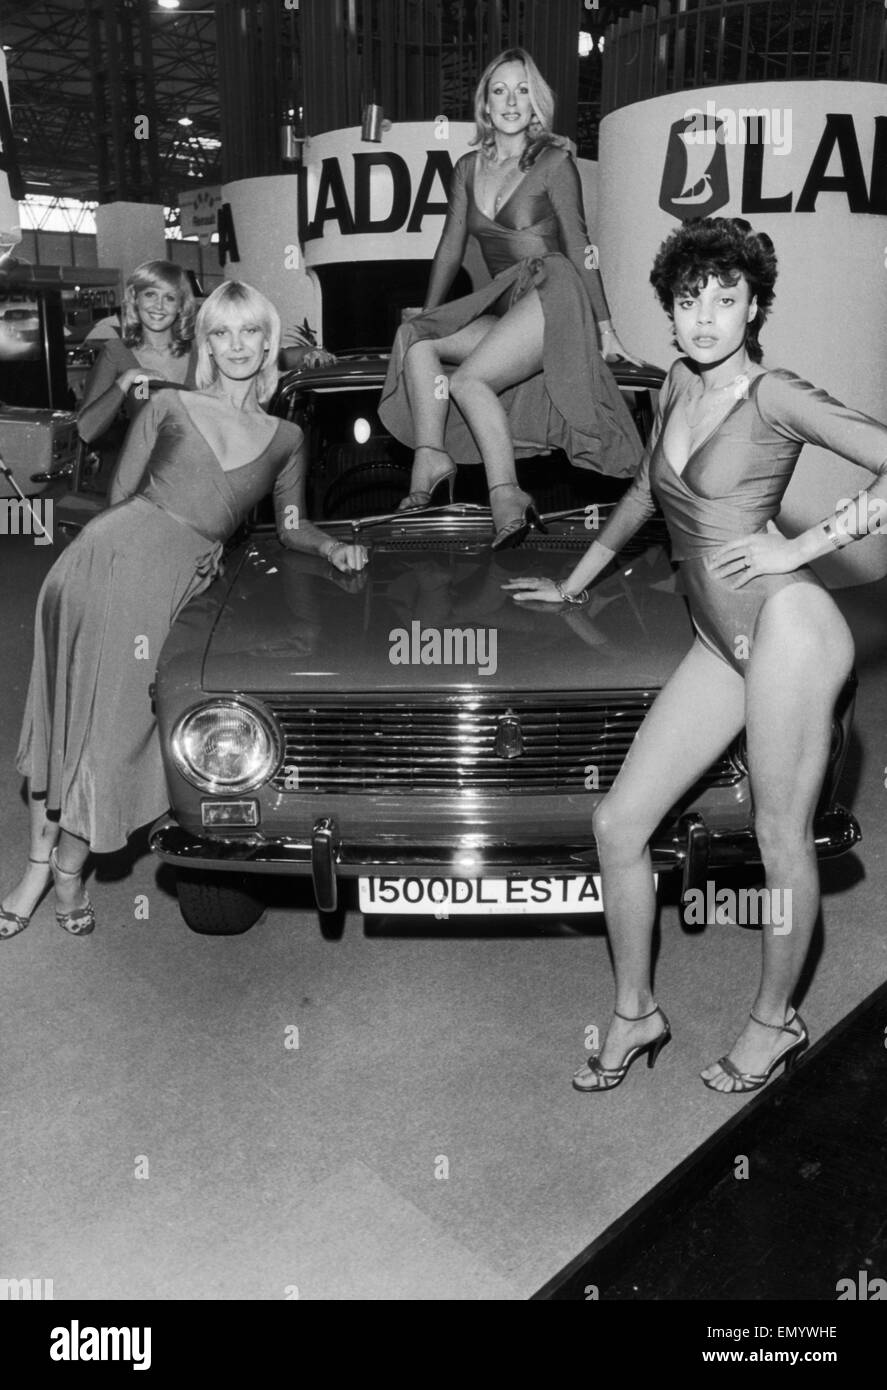 Modelos plantean sobre la Lada stand en el Motor Show 1984 en el NEC. El 24 de octubre de 1980 Foto de stock